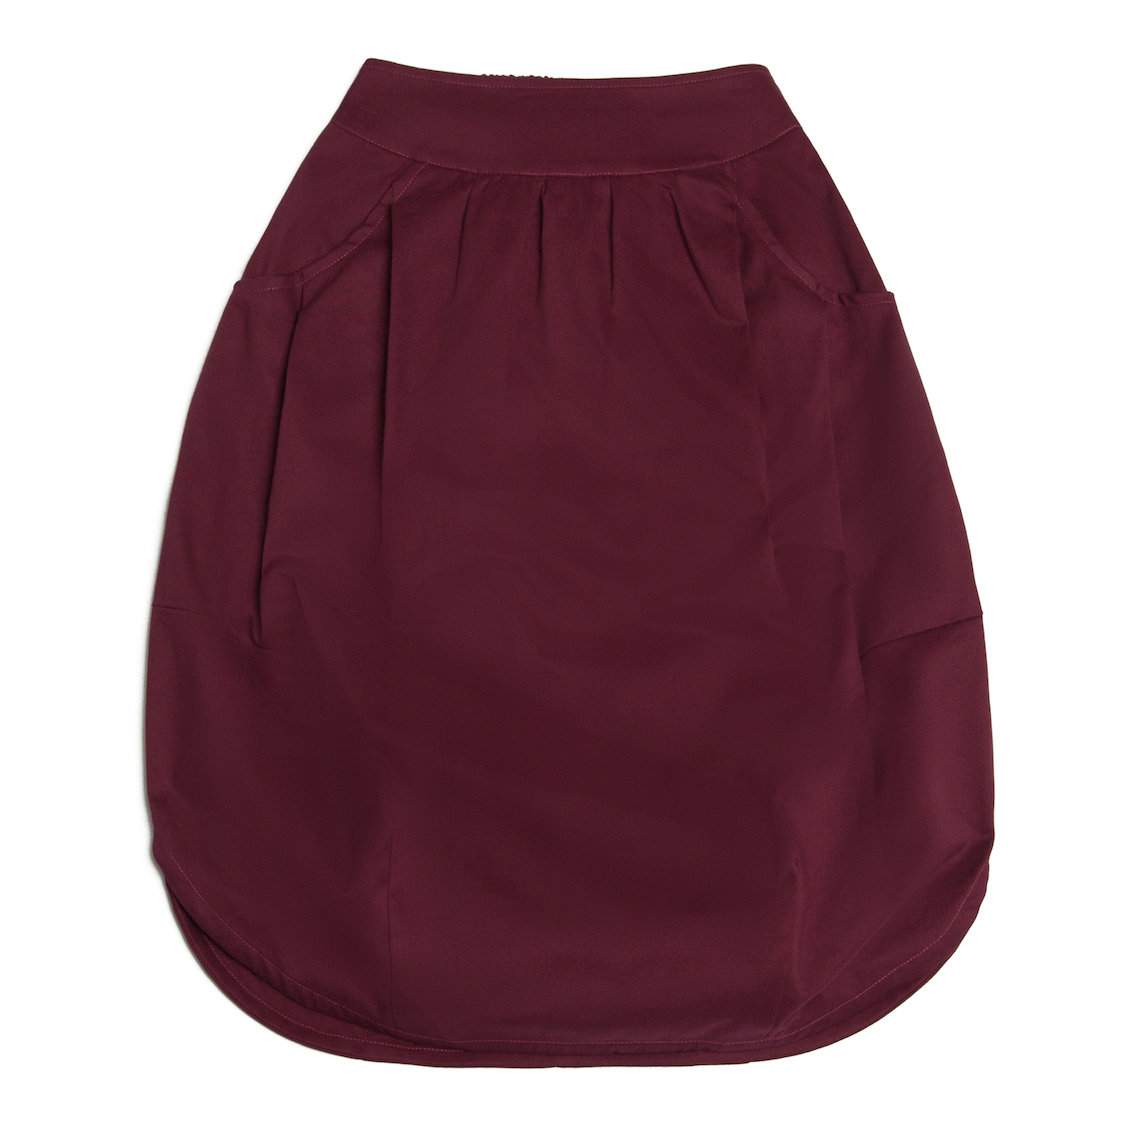 Взрослая юбка бордовая (2018)